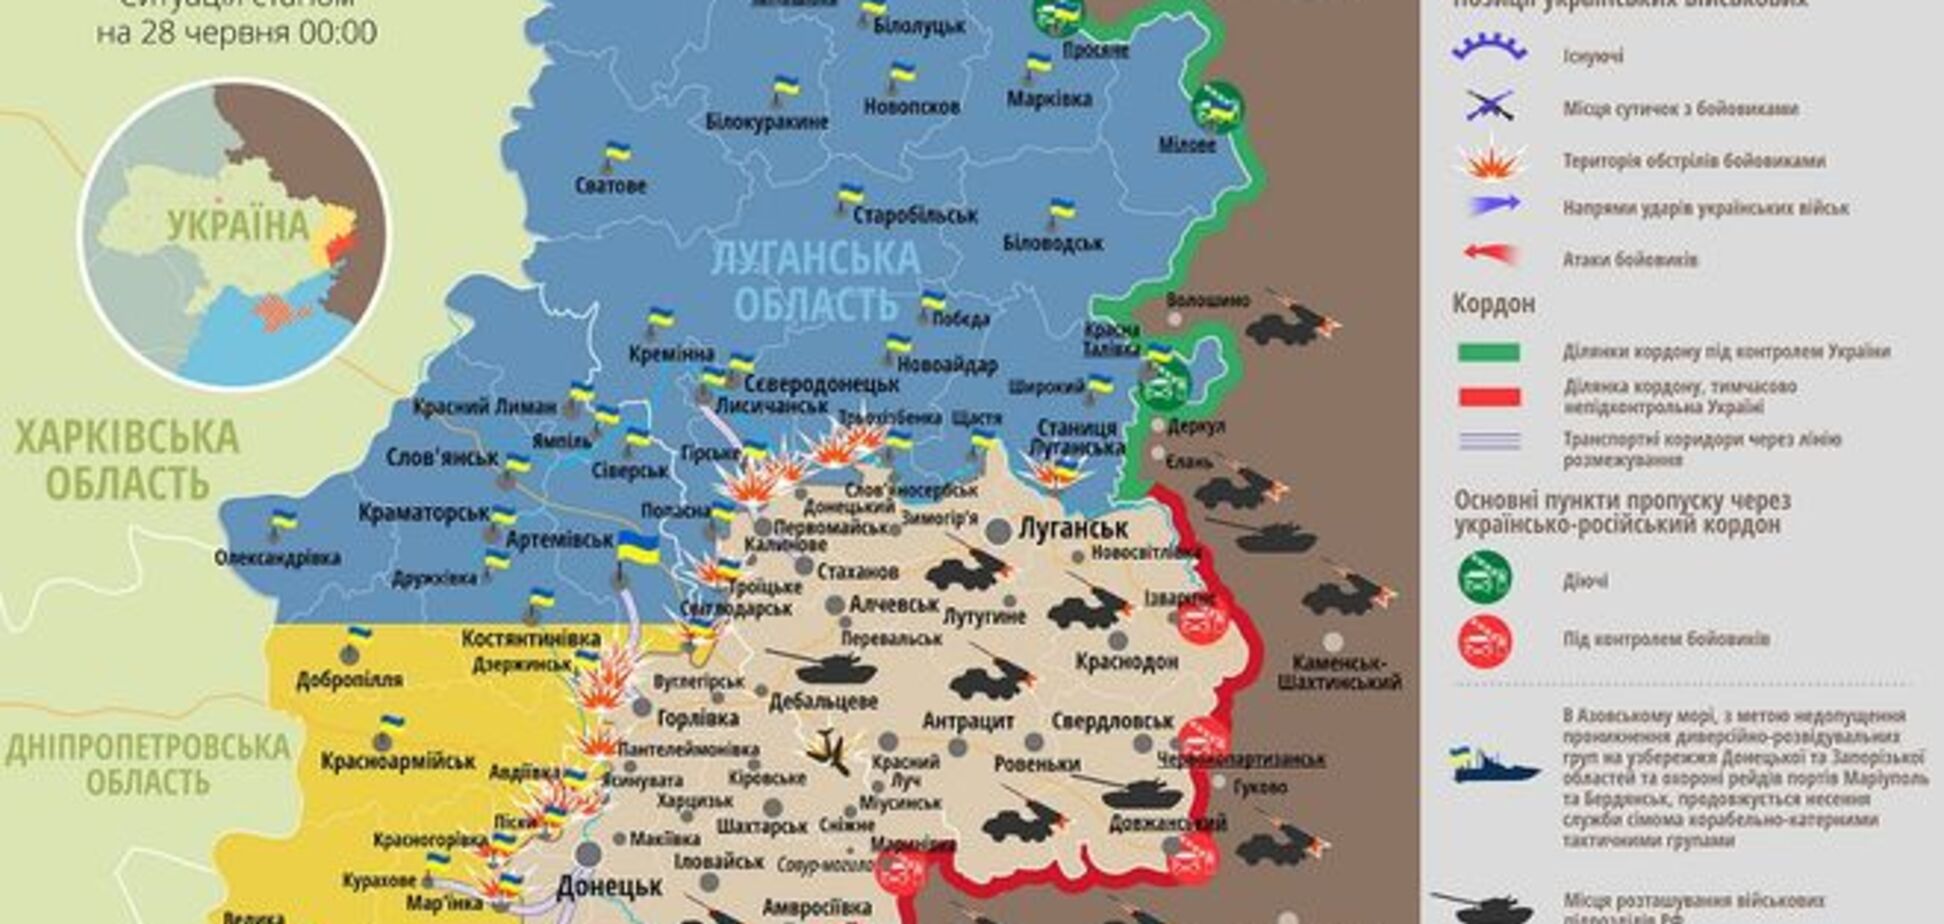 Стали известны главные цели террористов на Донбассе: карта АТО